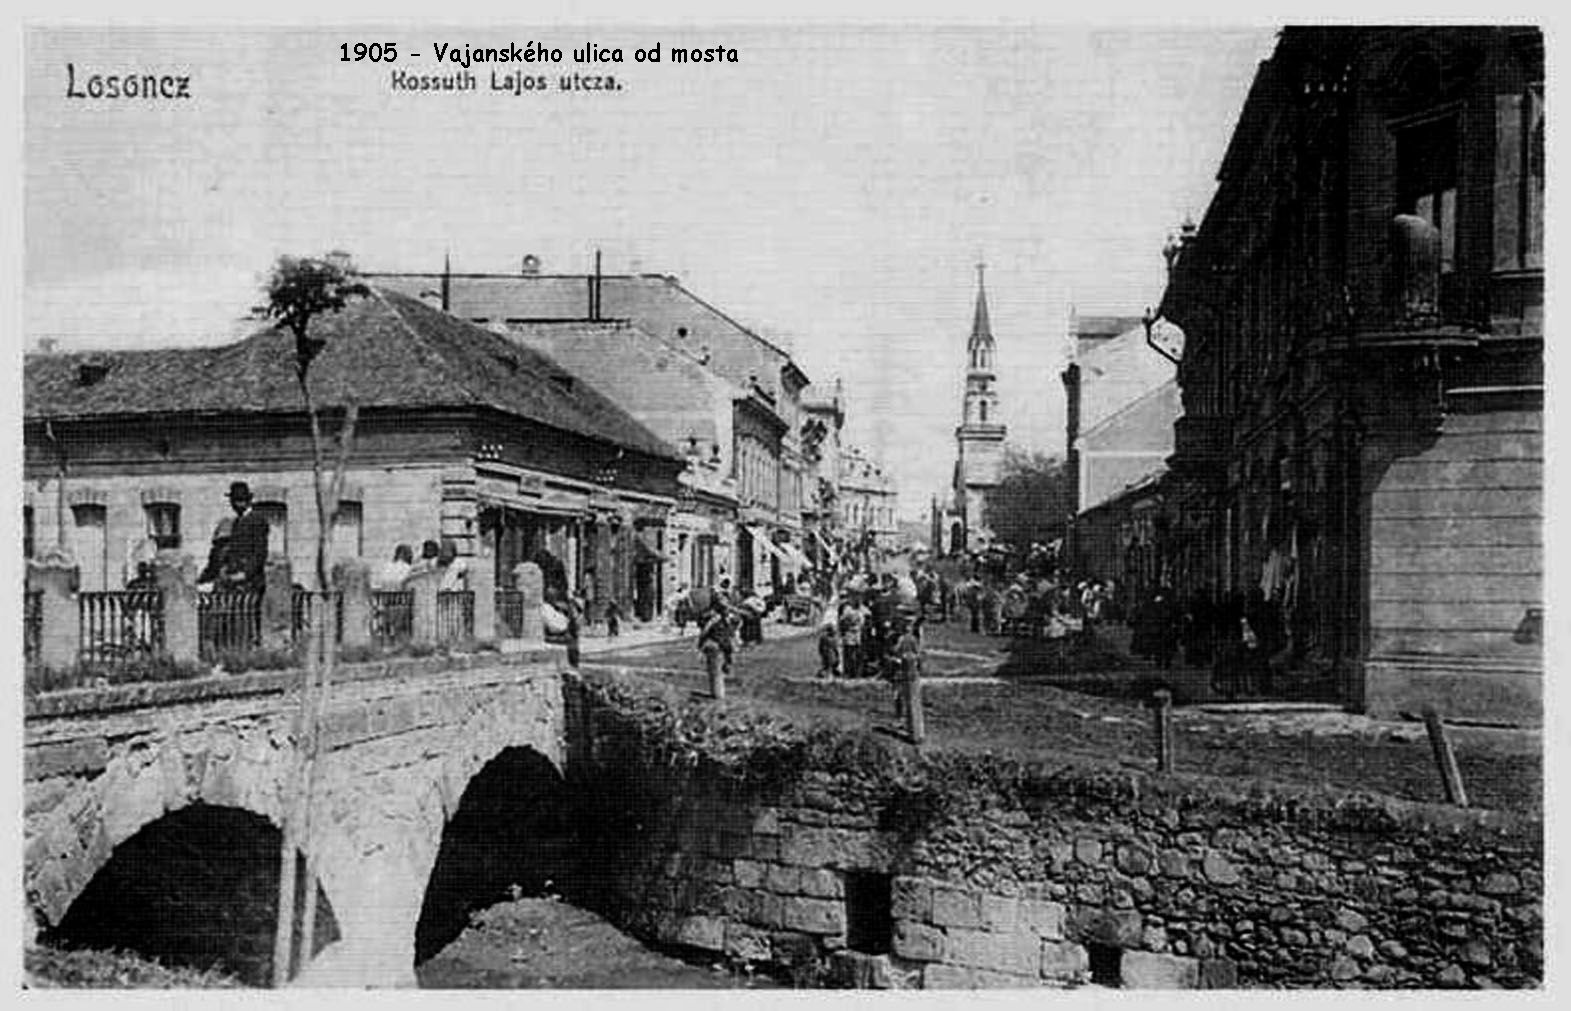 1905 - Pohľad na Vajanského ulicu z kamenného mosta